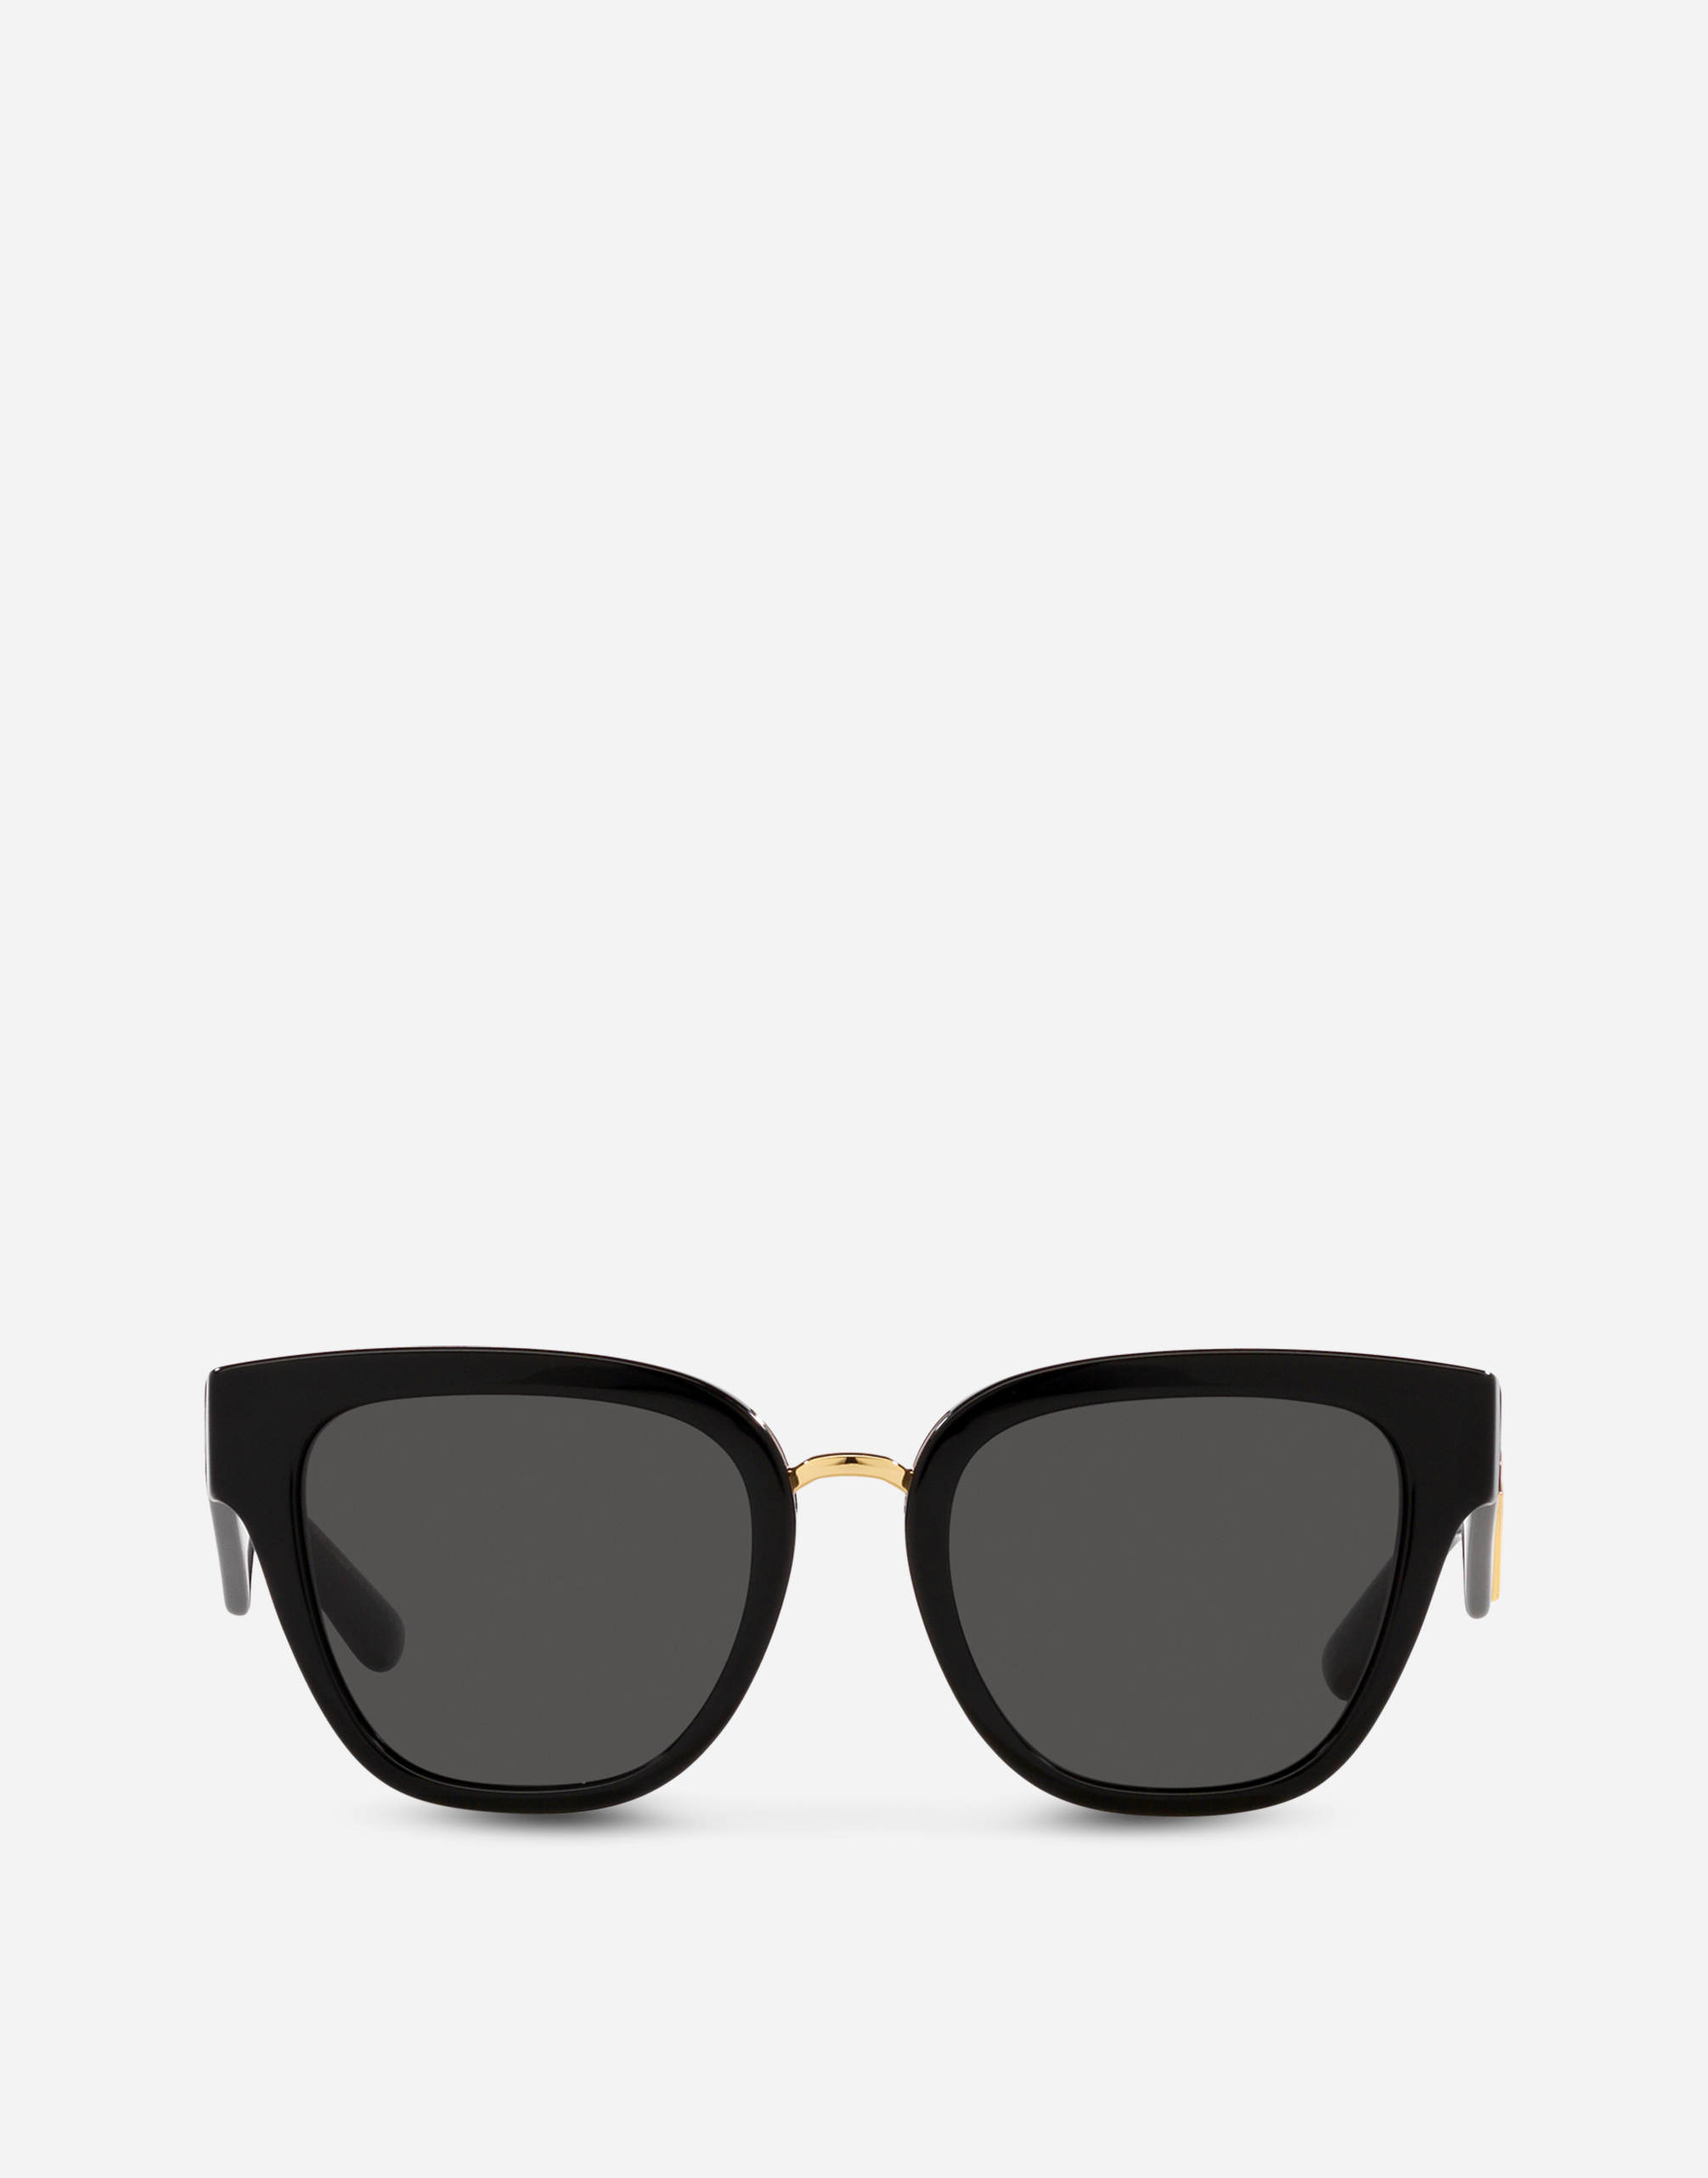 DG Crossed Sunglasses in Black